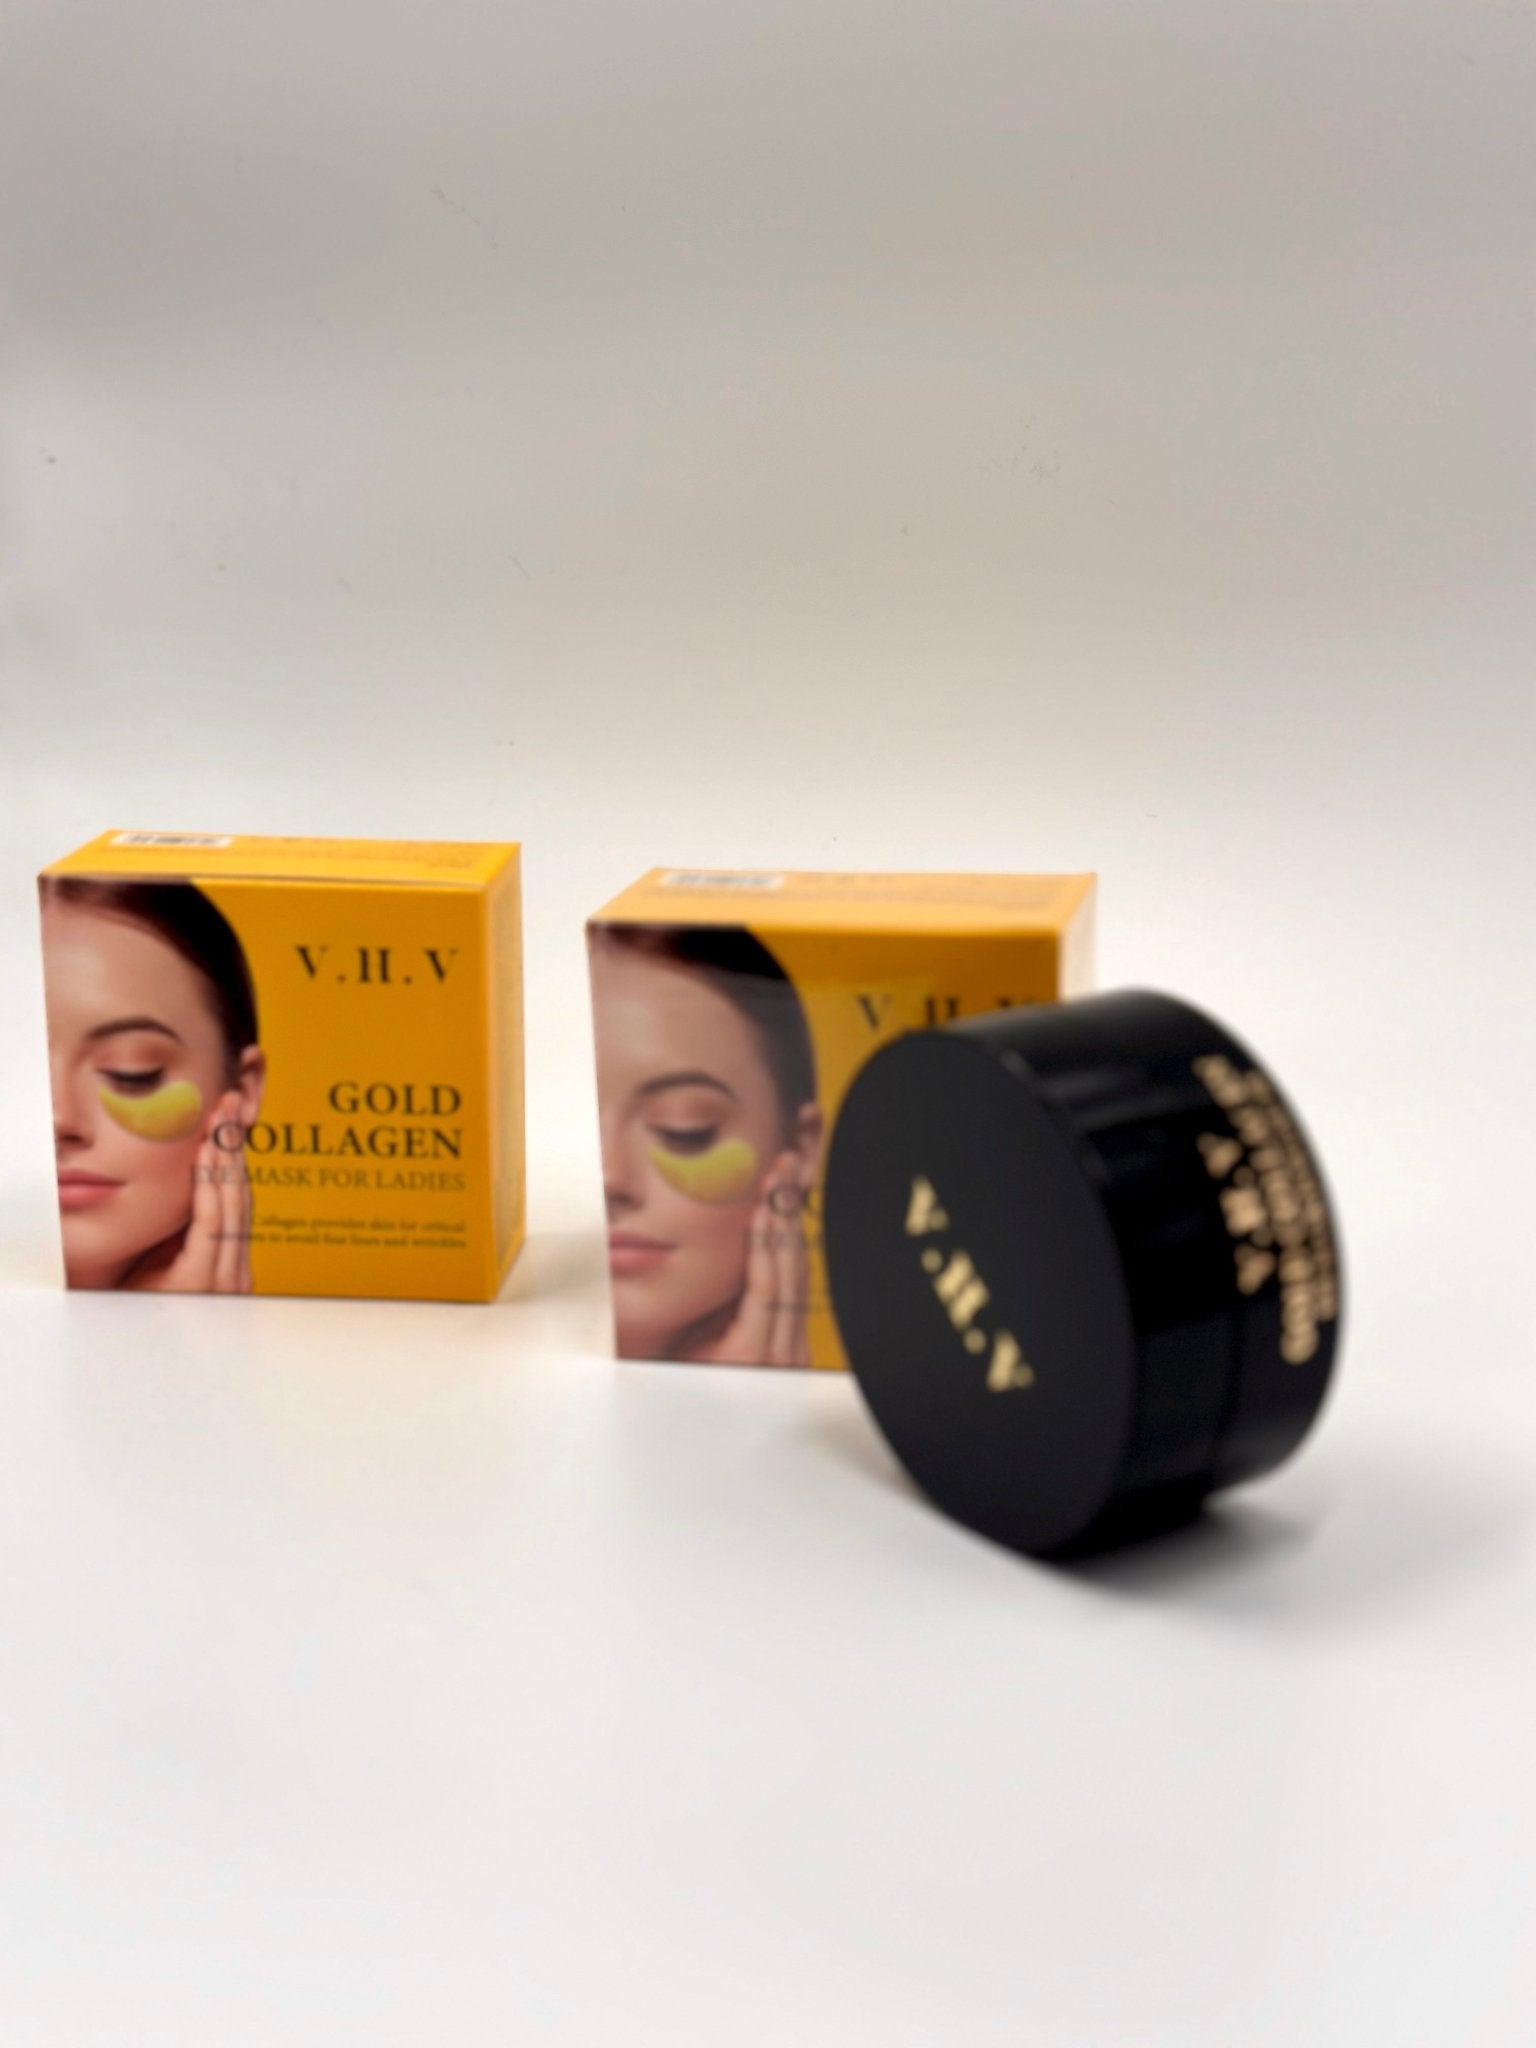 V.H.V Gold Collagen eyepatch - Χρυσή μάσκα ματιών 60 τεμάχια - BEAUTYV.H.V®The GrBazaar of Brands